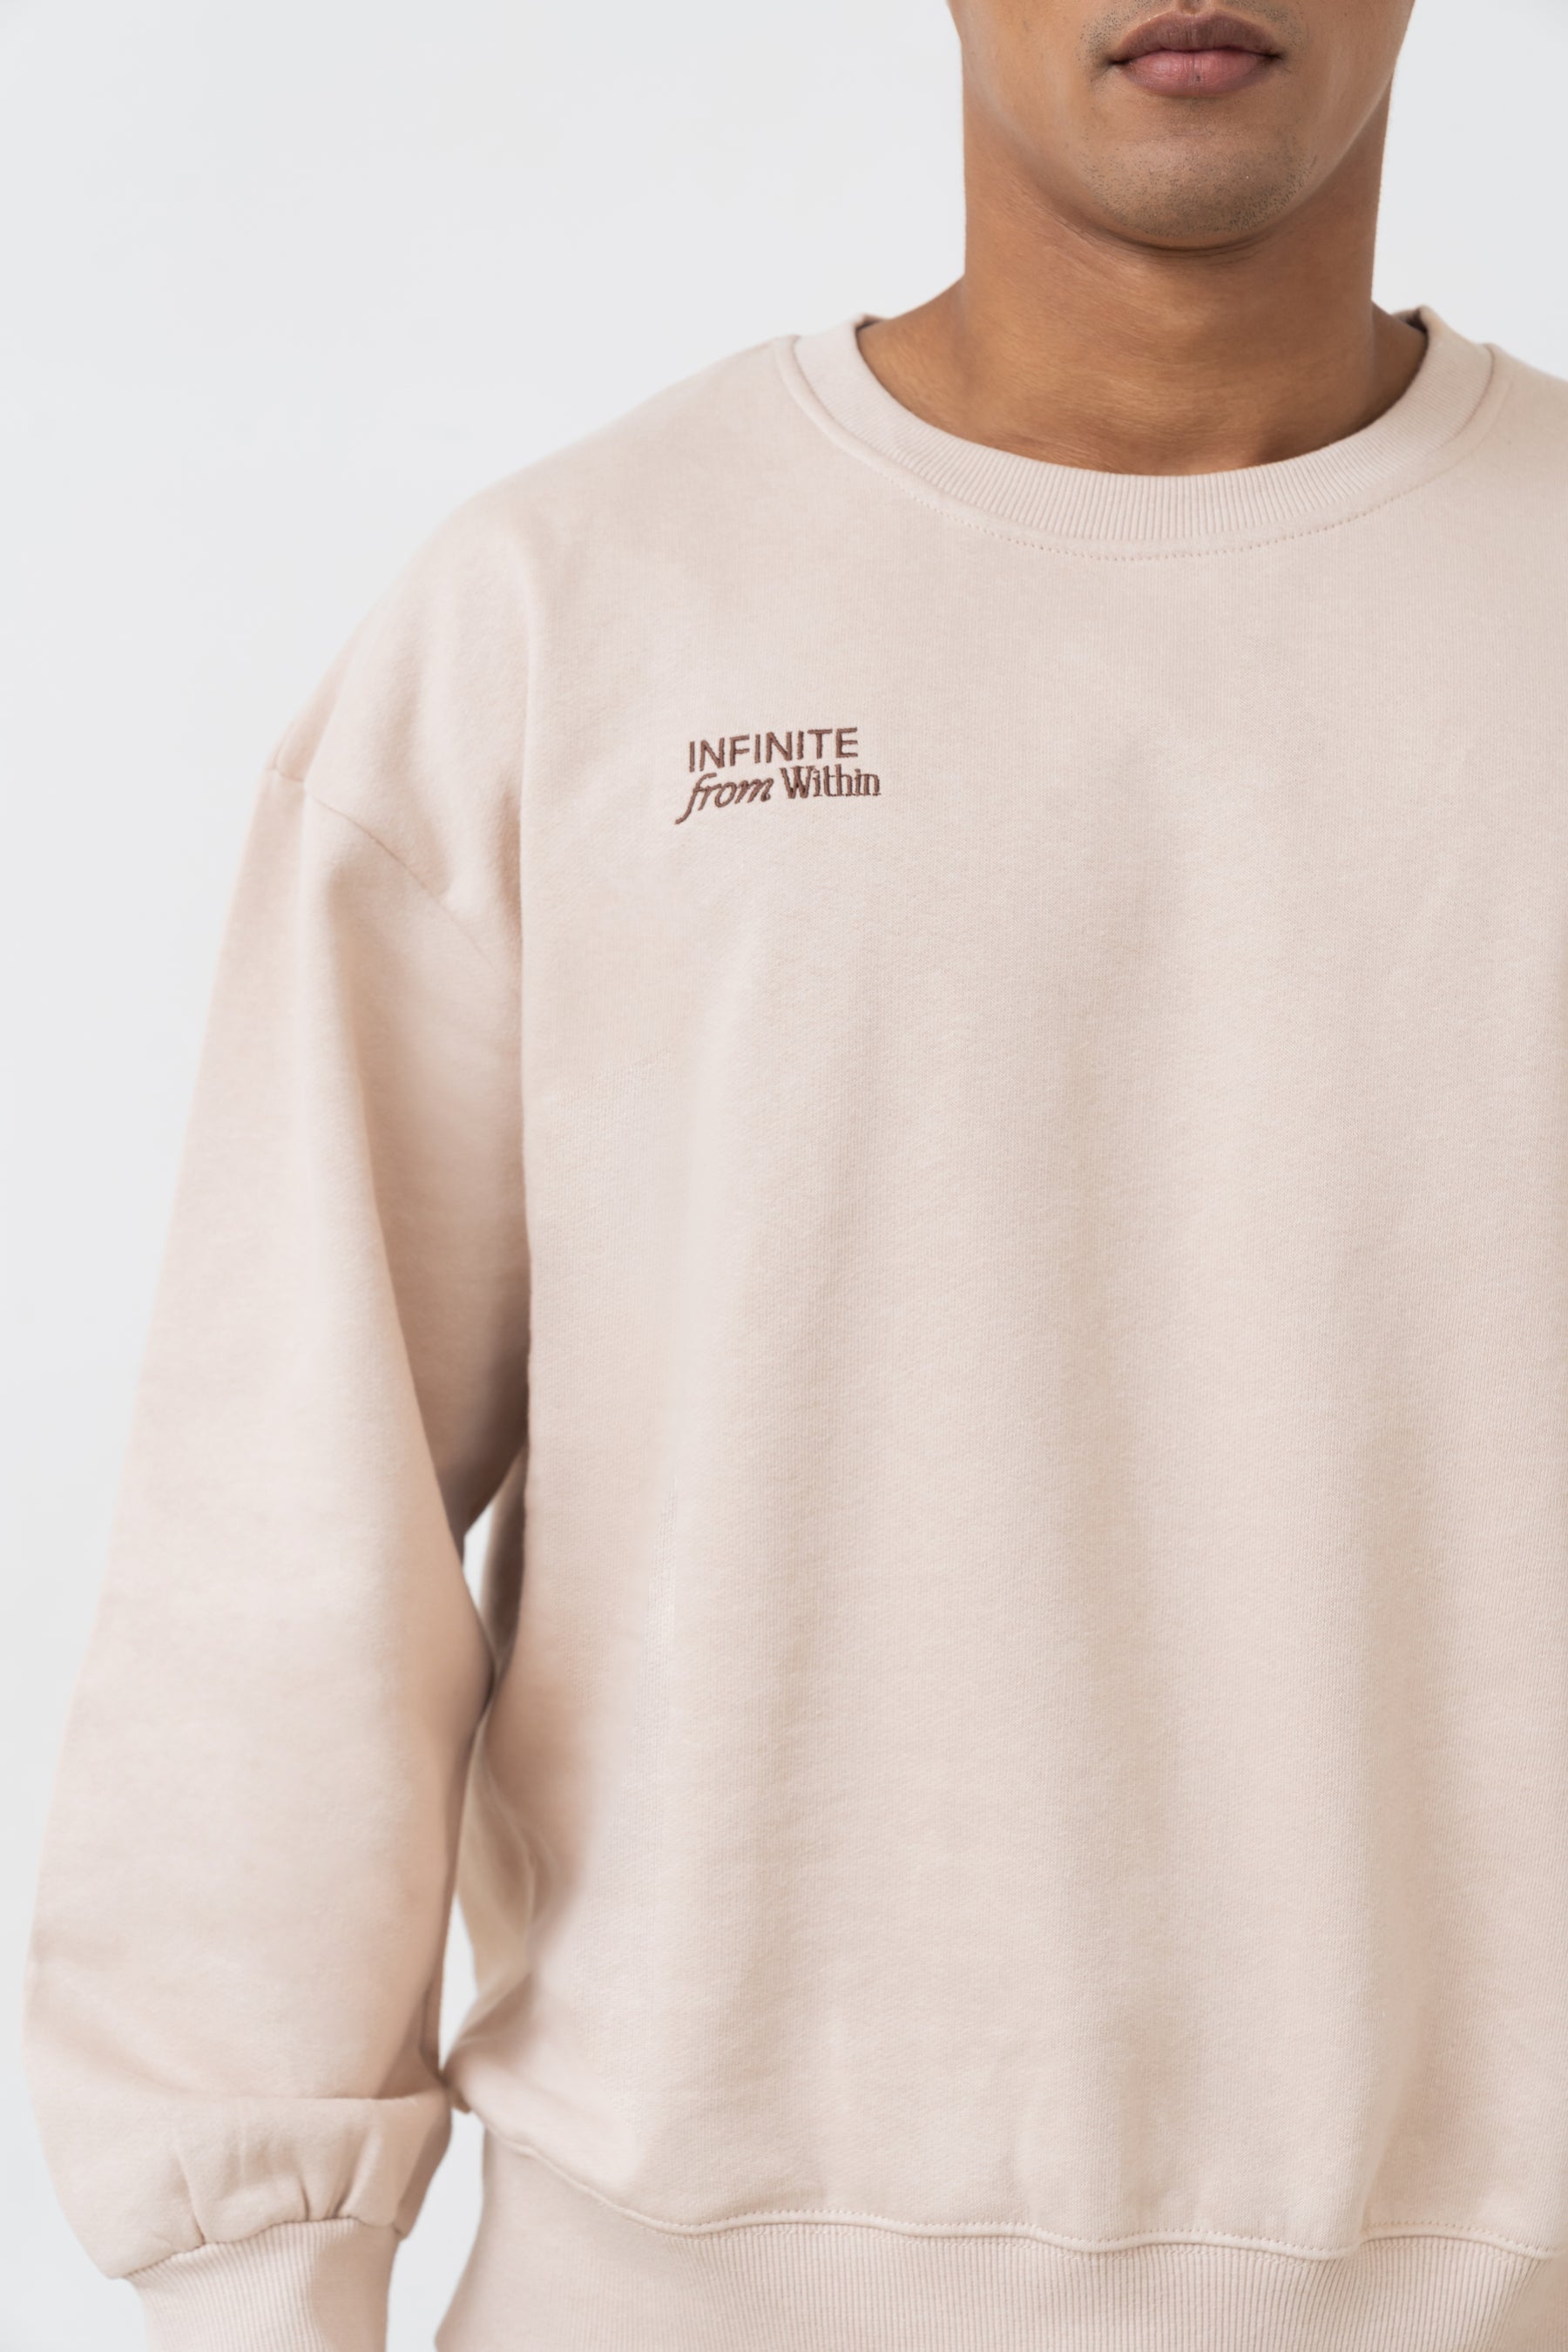 Infinite Crew Neck Sweater in Latte (Unisex)